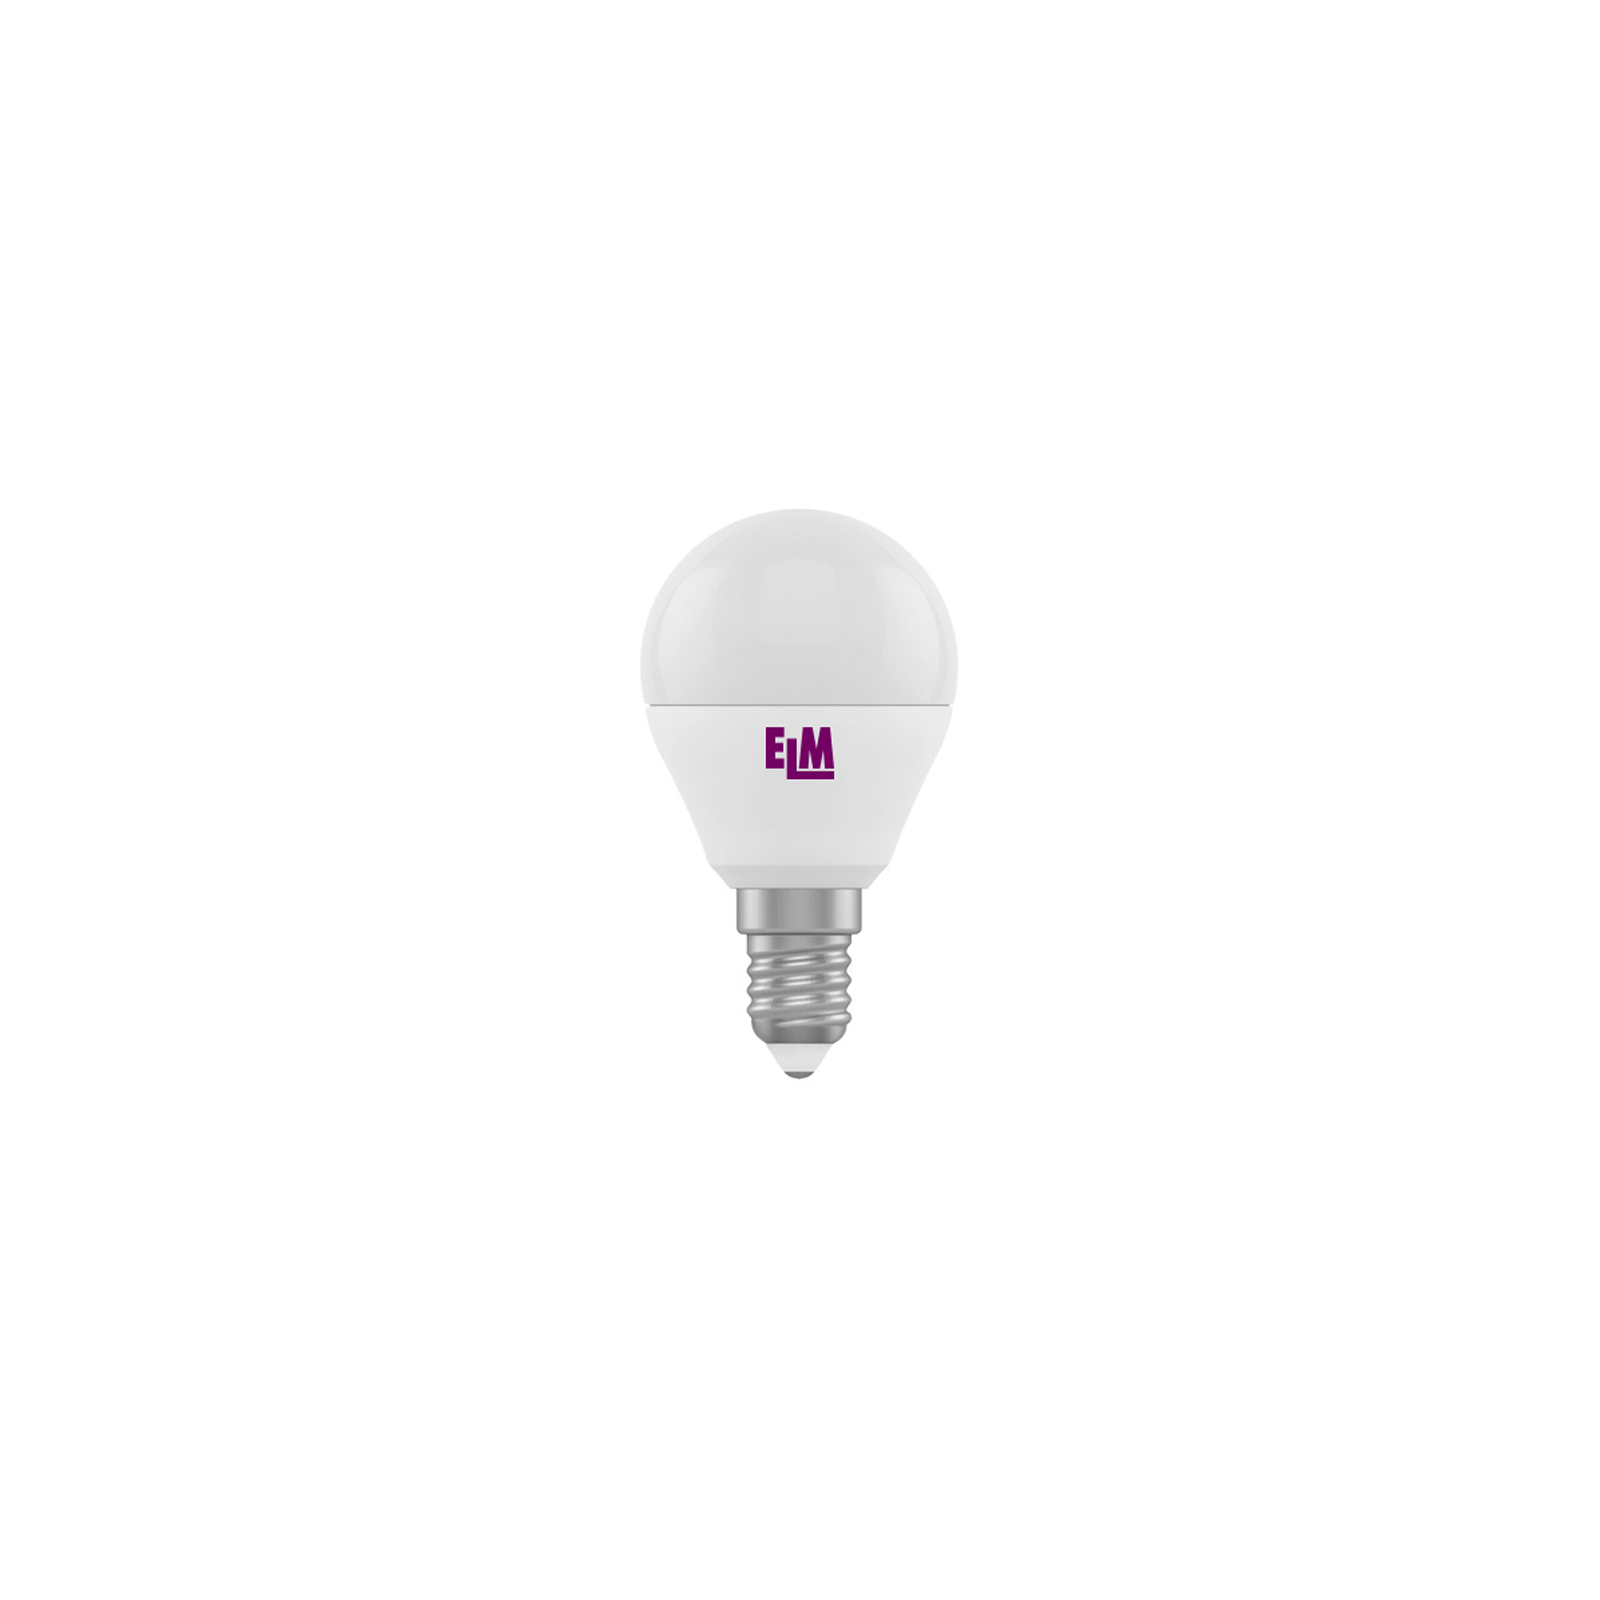 Лампочка ELM E14 (18-0014)